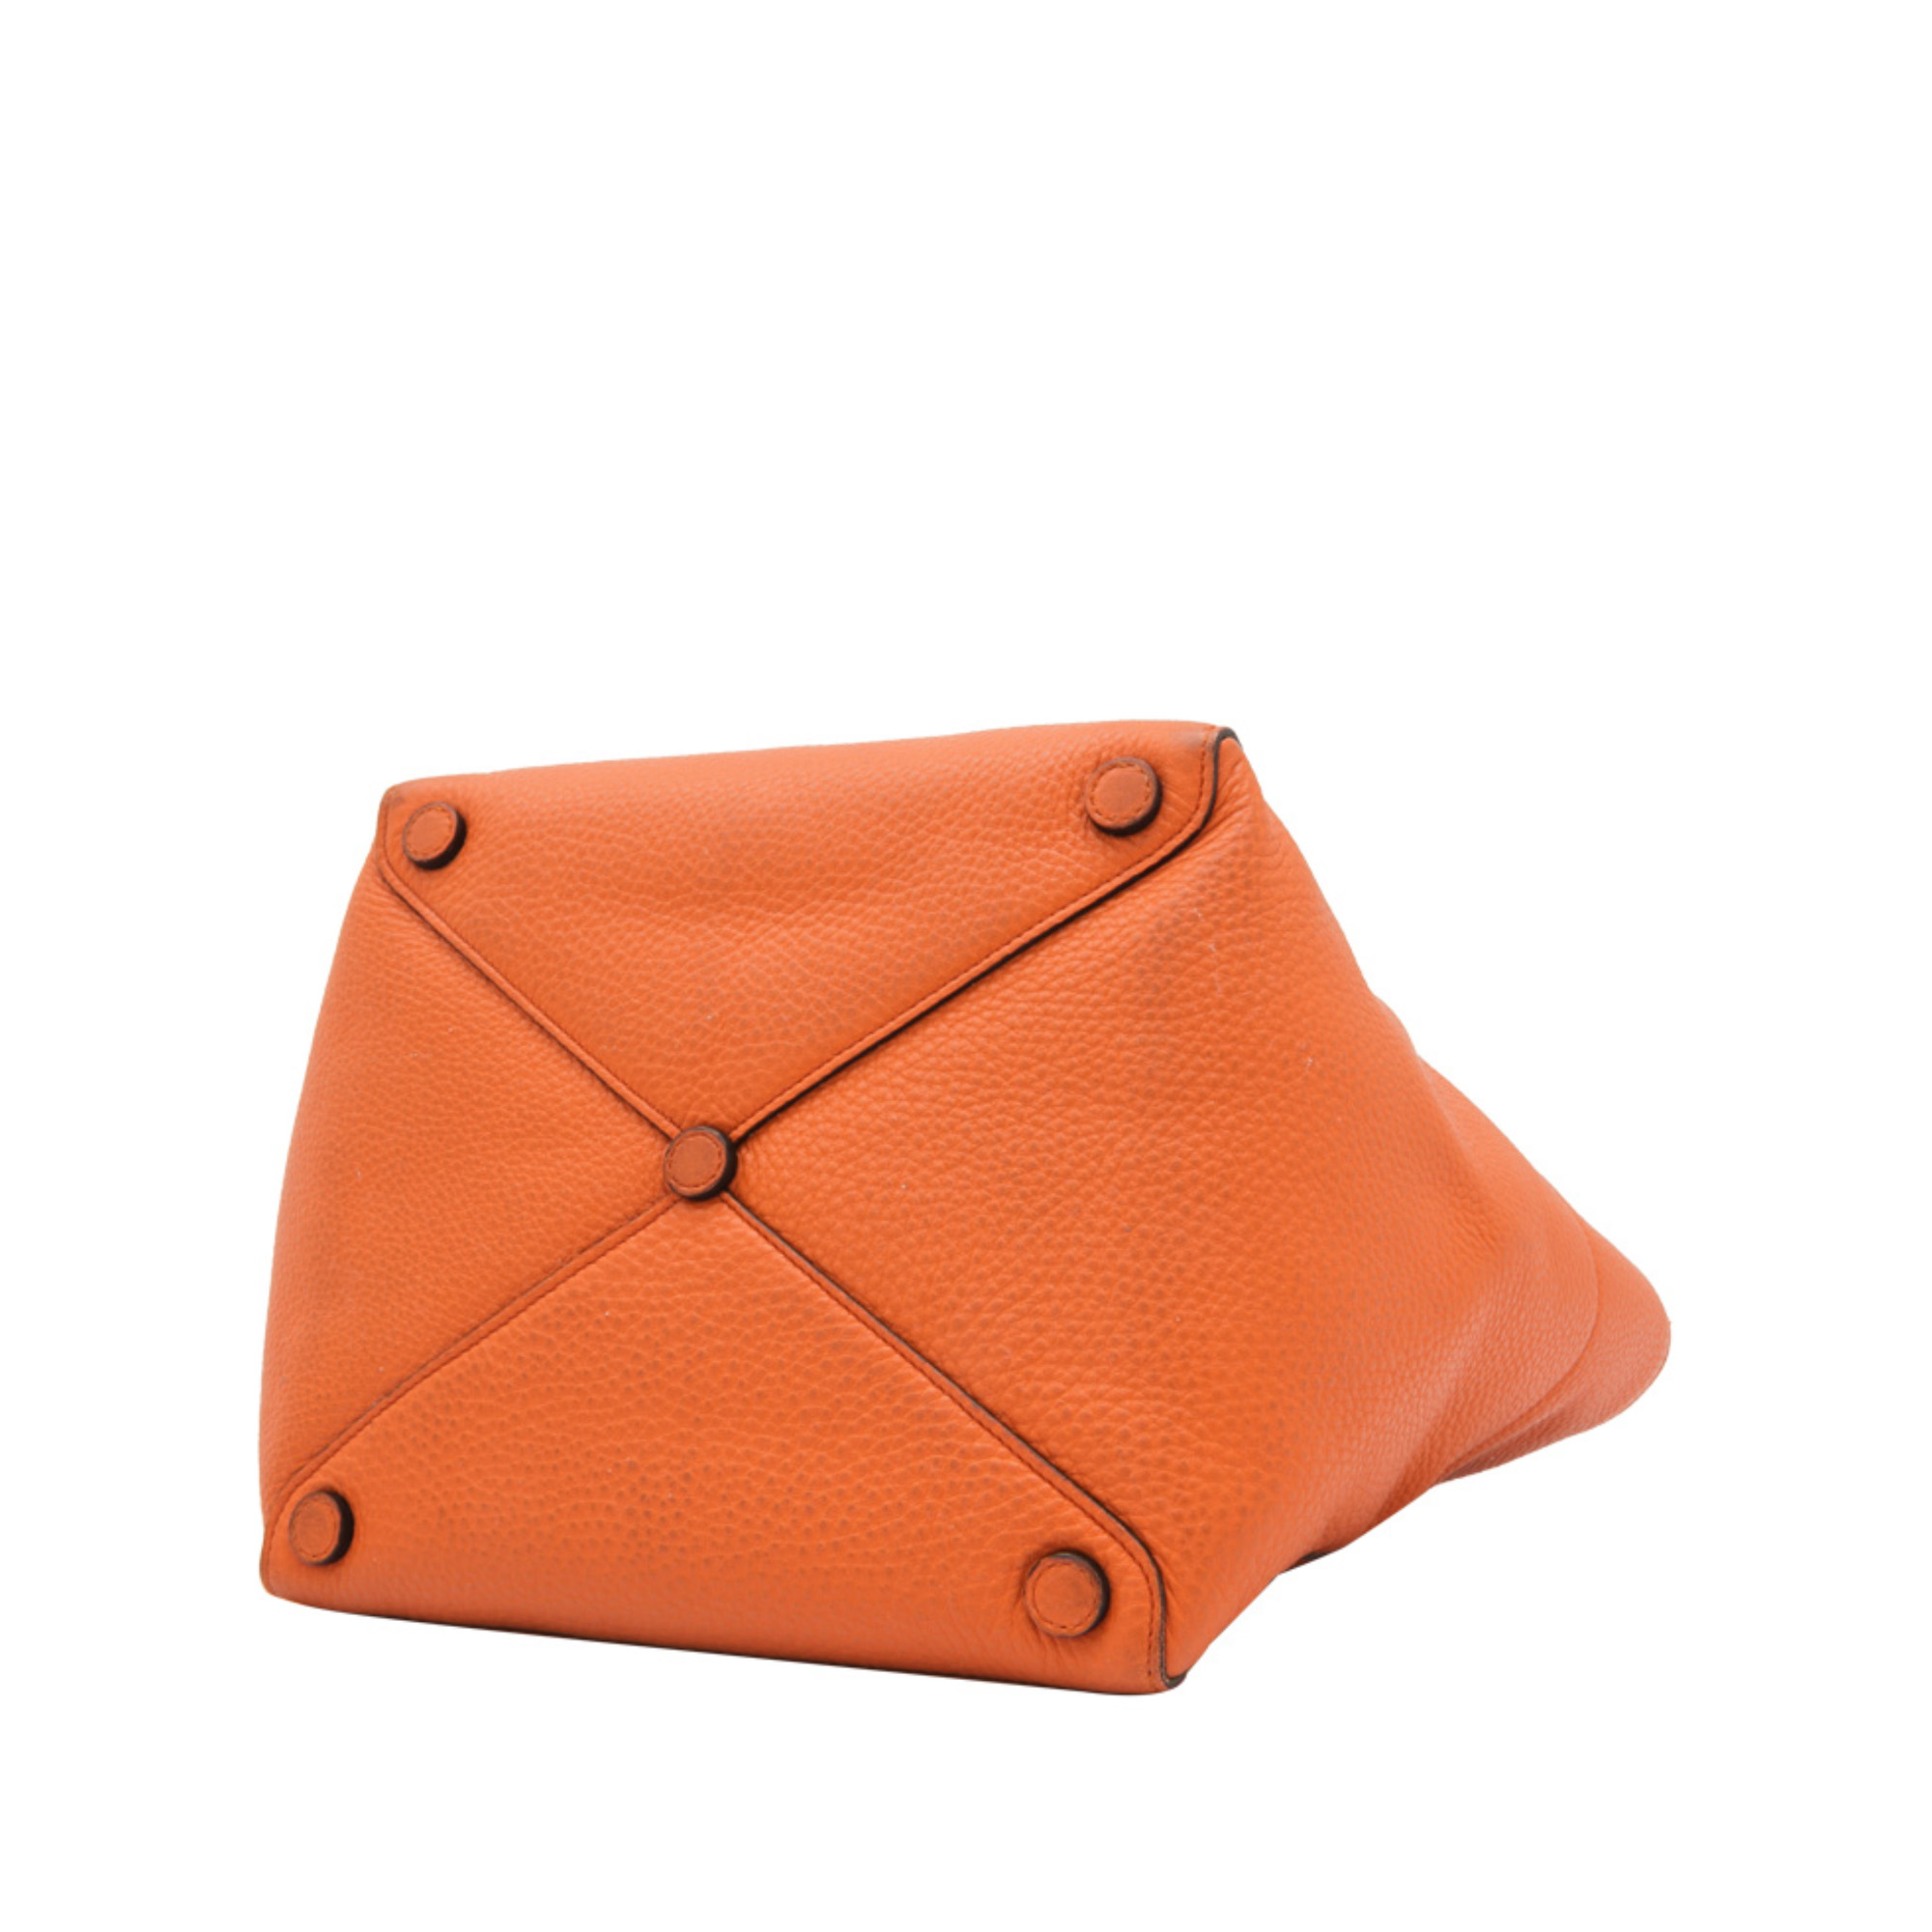 Prada Metallic Vitello Daino Leather Tote Bag, this tote bag features a vitello daino leather - Image 3 of 5